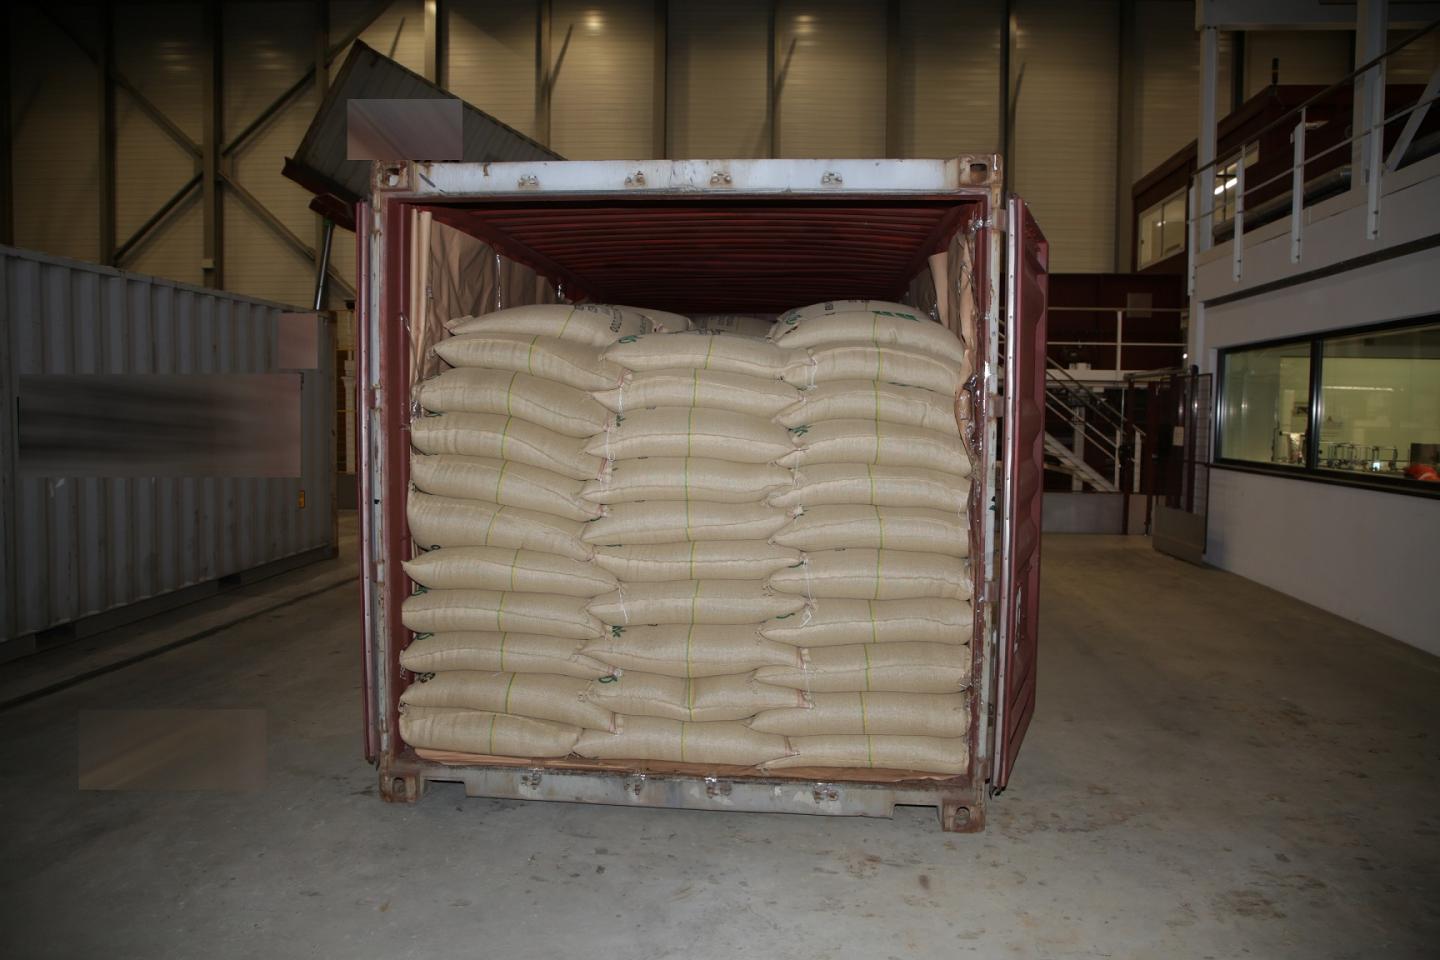 В одном из контейнеров с кофейными зернами был обнаружен и изъят кокаин, стоимость которого оценивается примерно в 50 миллионов франков.